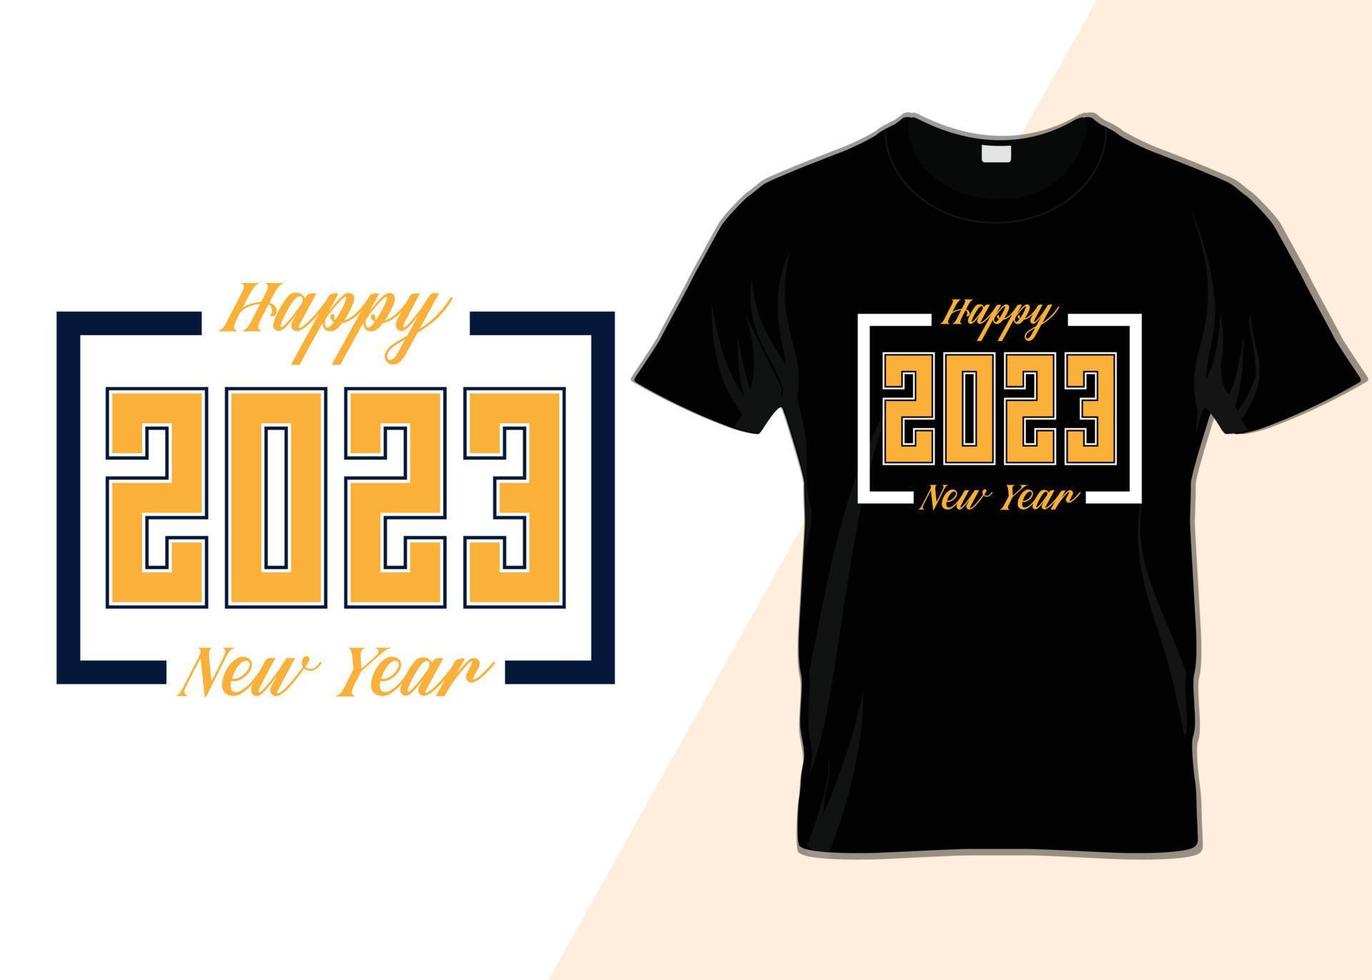 feliz año nuevo 2023 tipografía diseño de camiseta vector